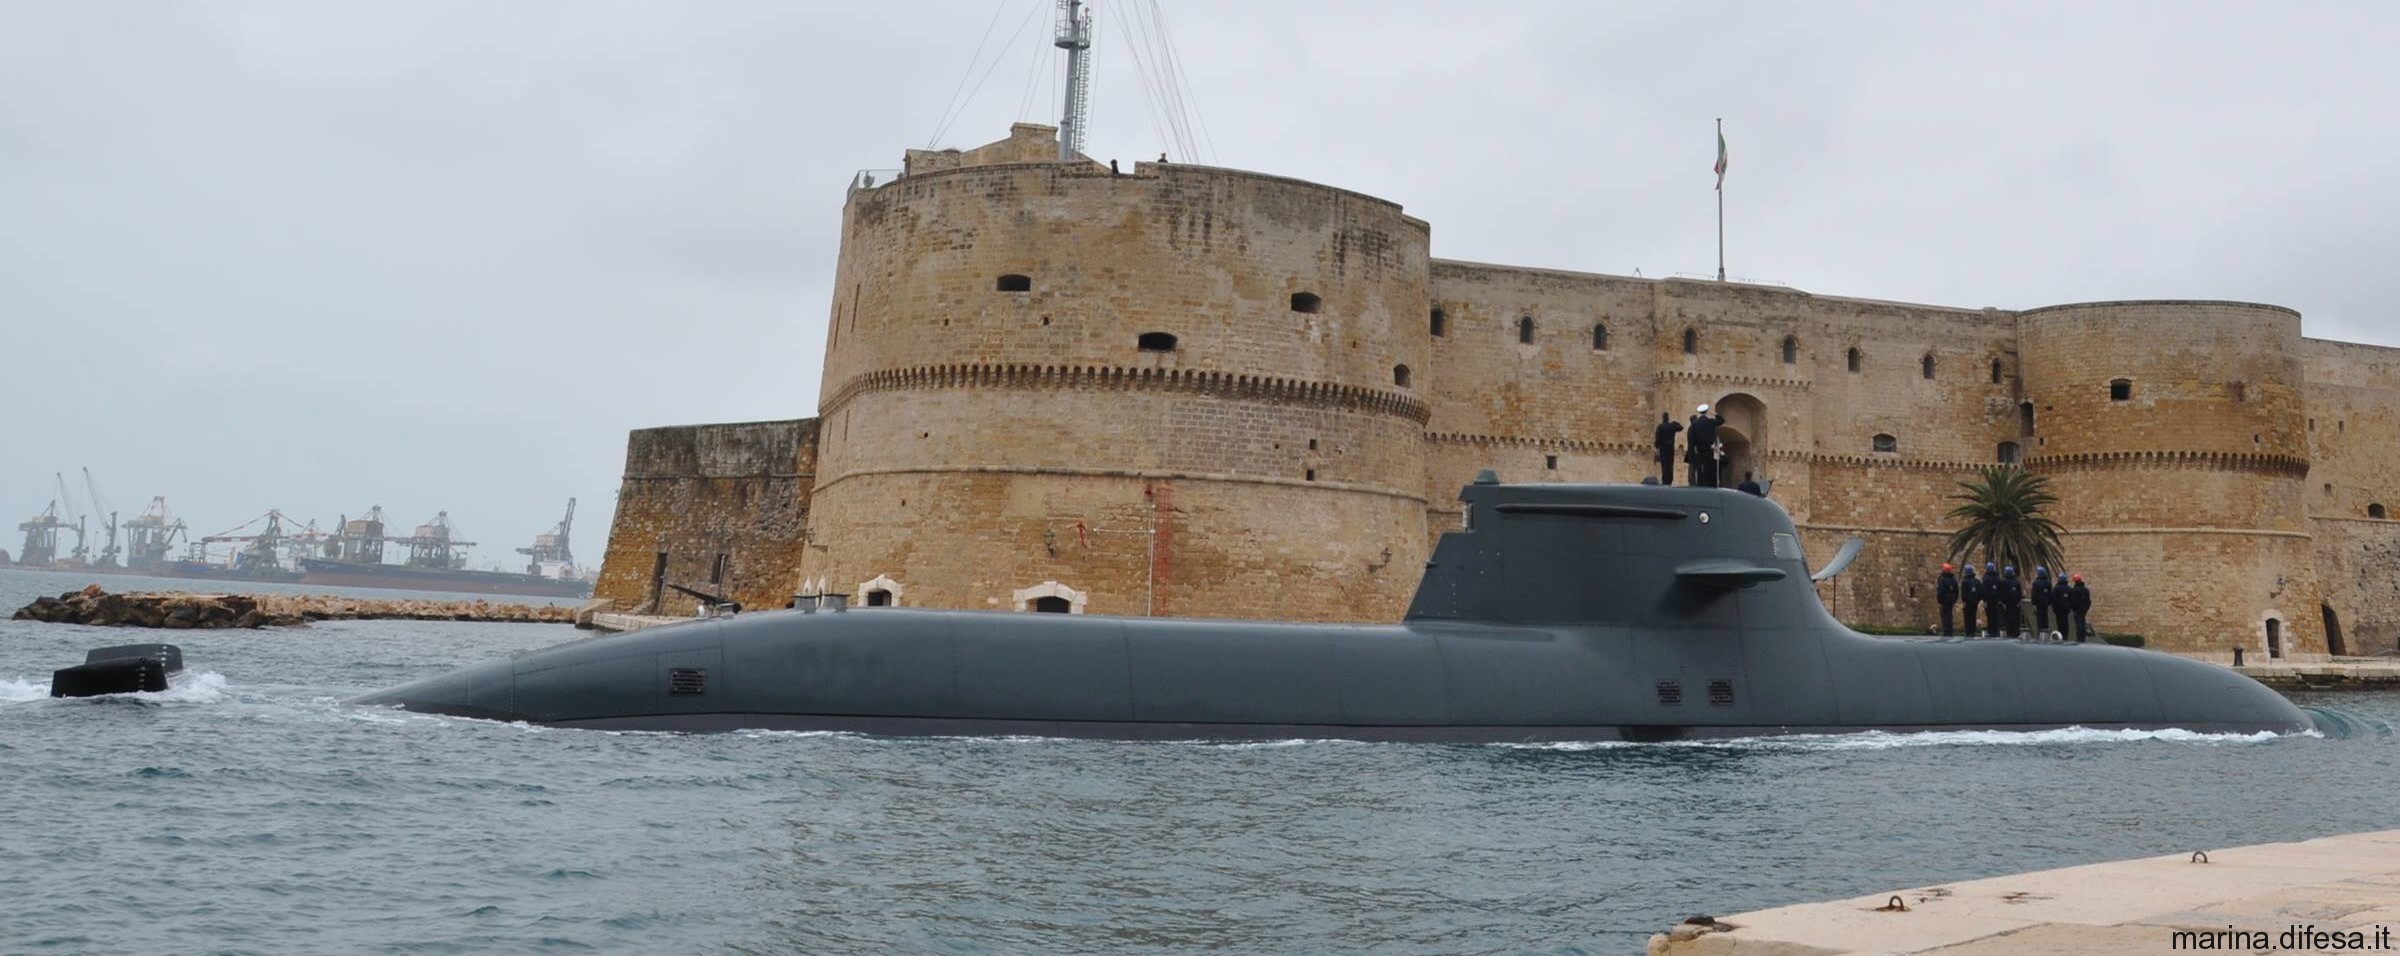 s-526 salvatore todaro its smg type 212 class submarine italian navy marina militare 20